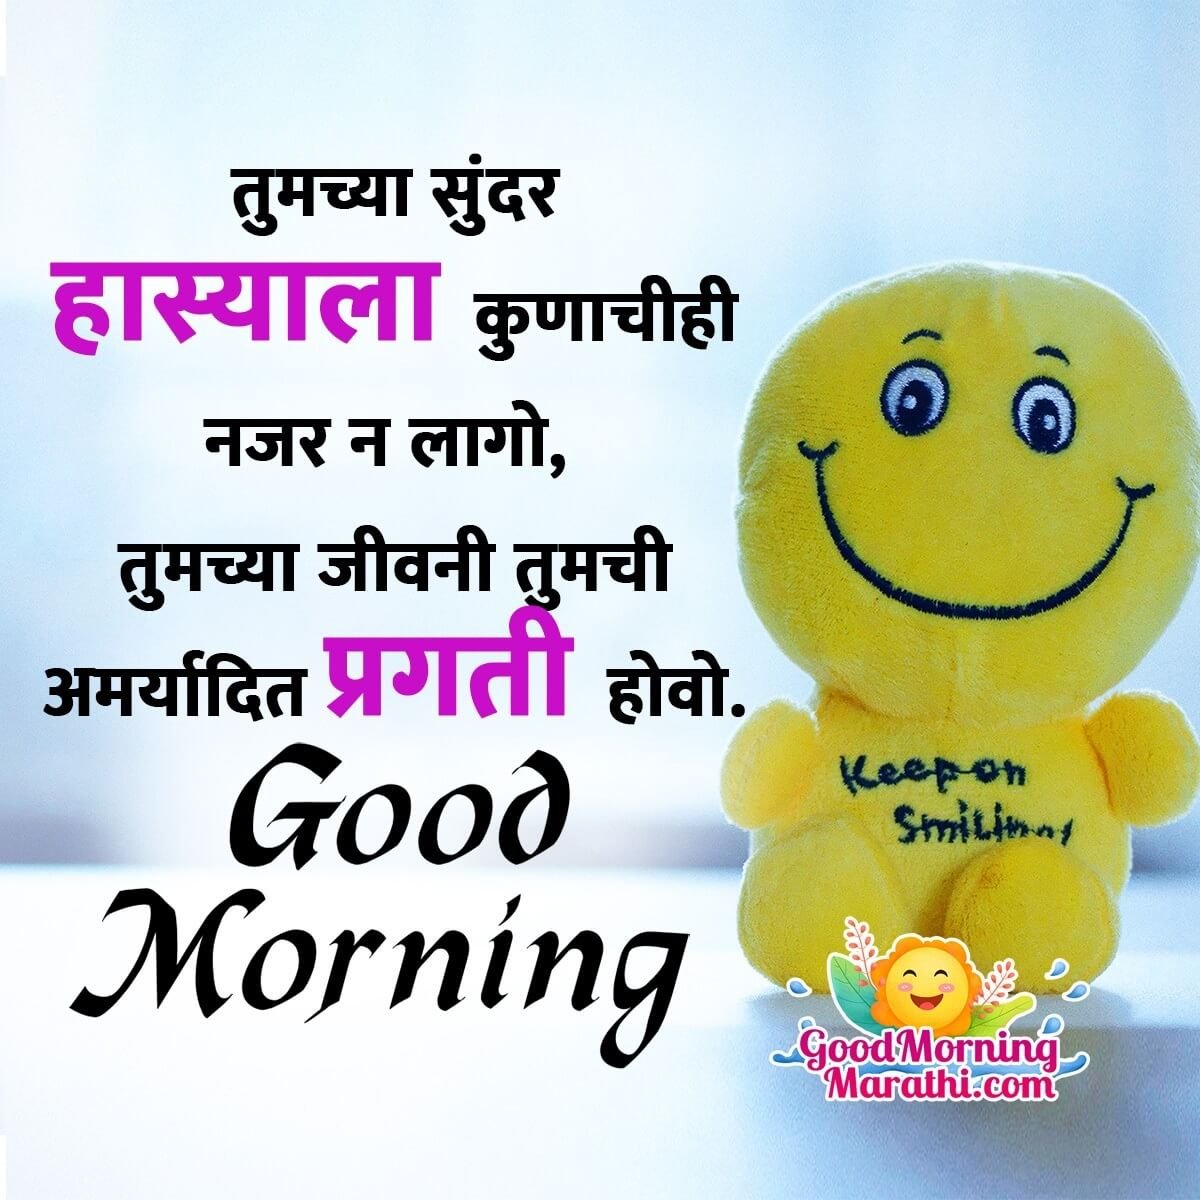 Good Morning Marathi Wishes - Good Morning Wishes & Images In Marathi